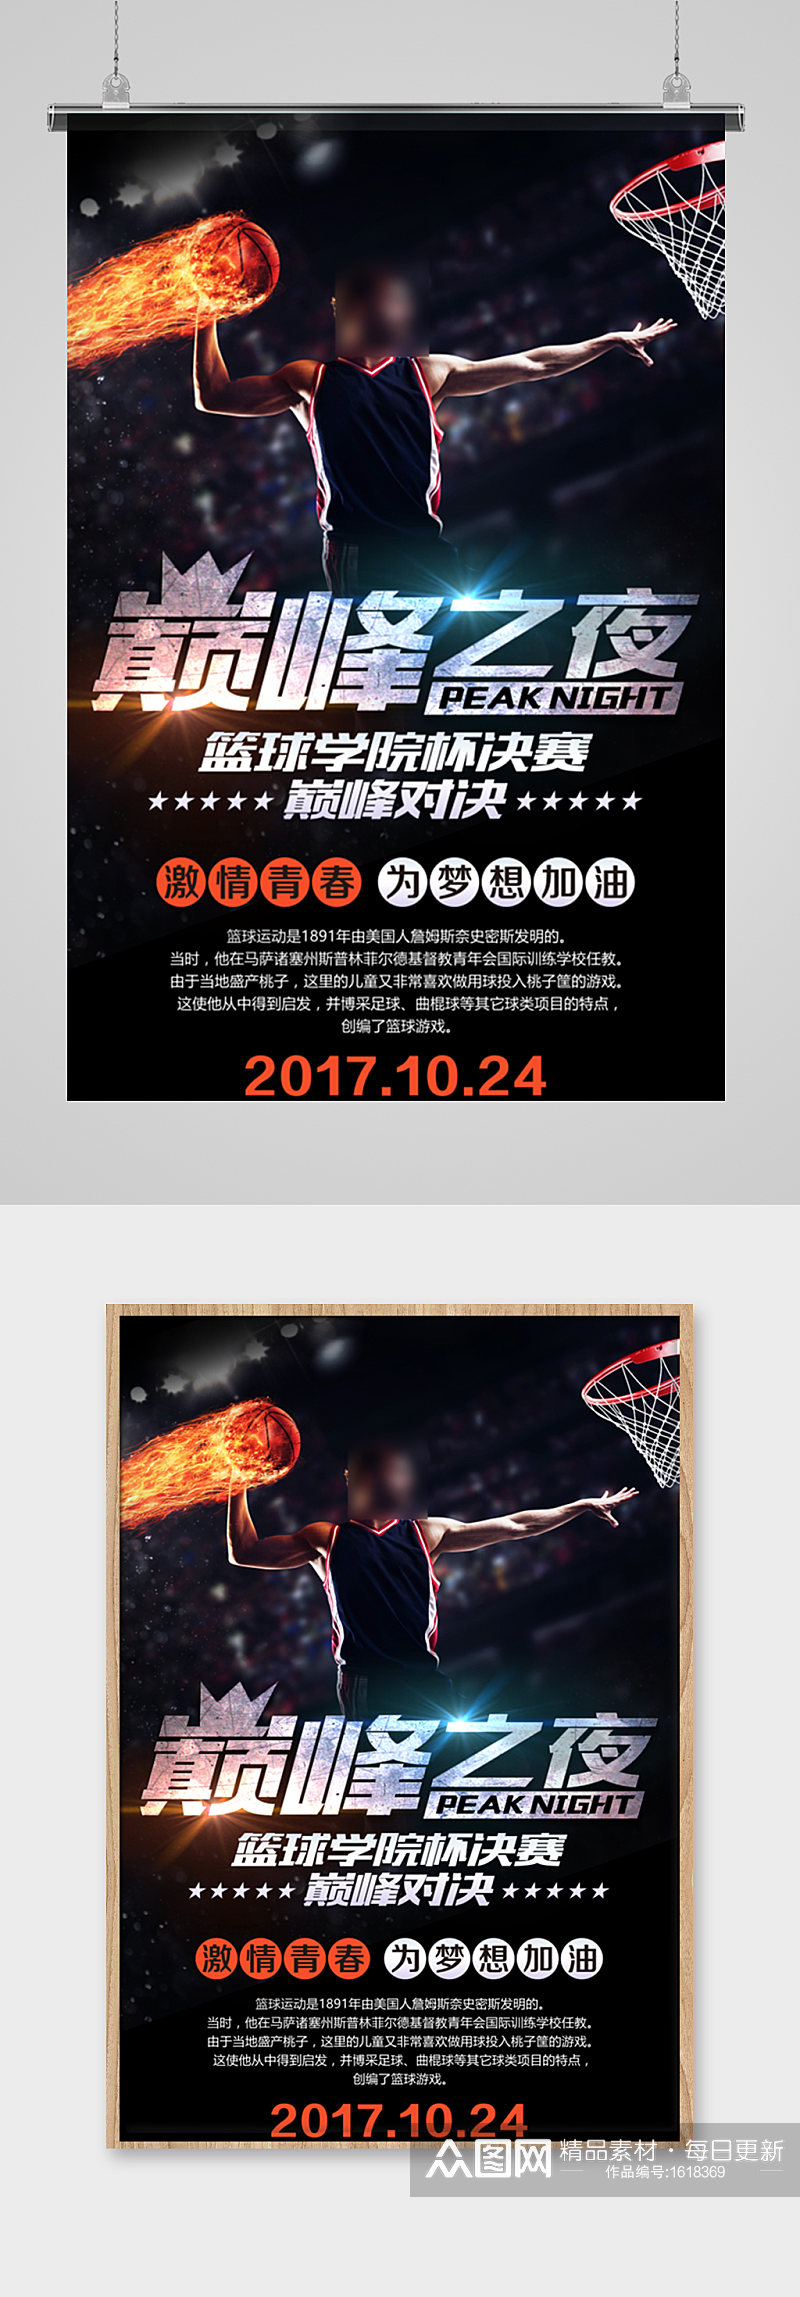 创意篮球比赛巅峰之夜海报素材